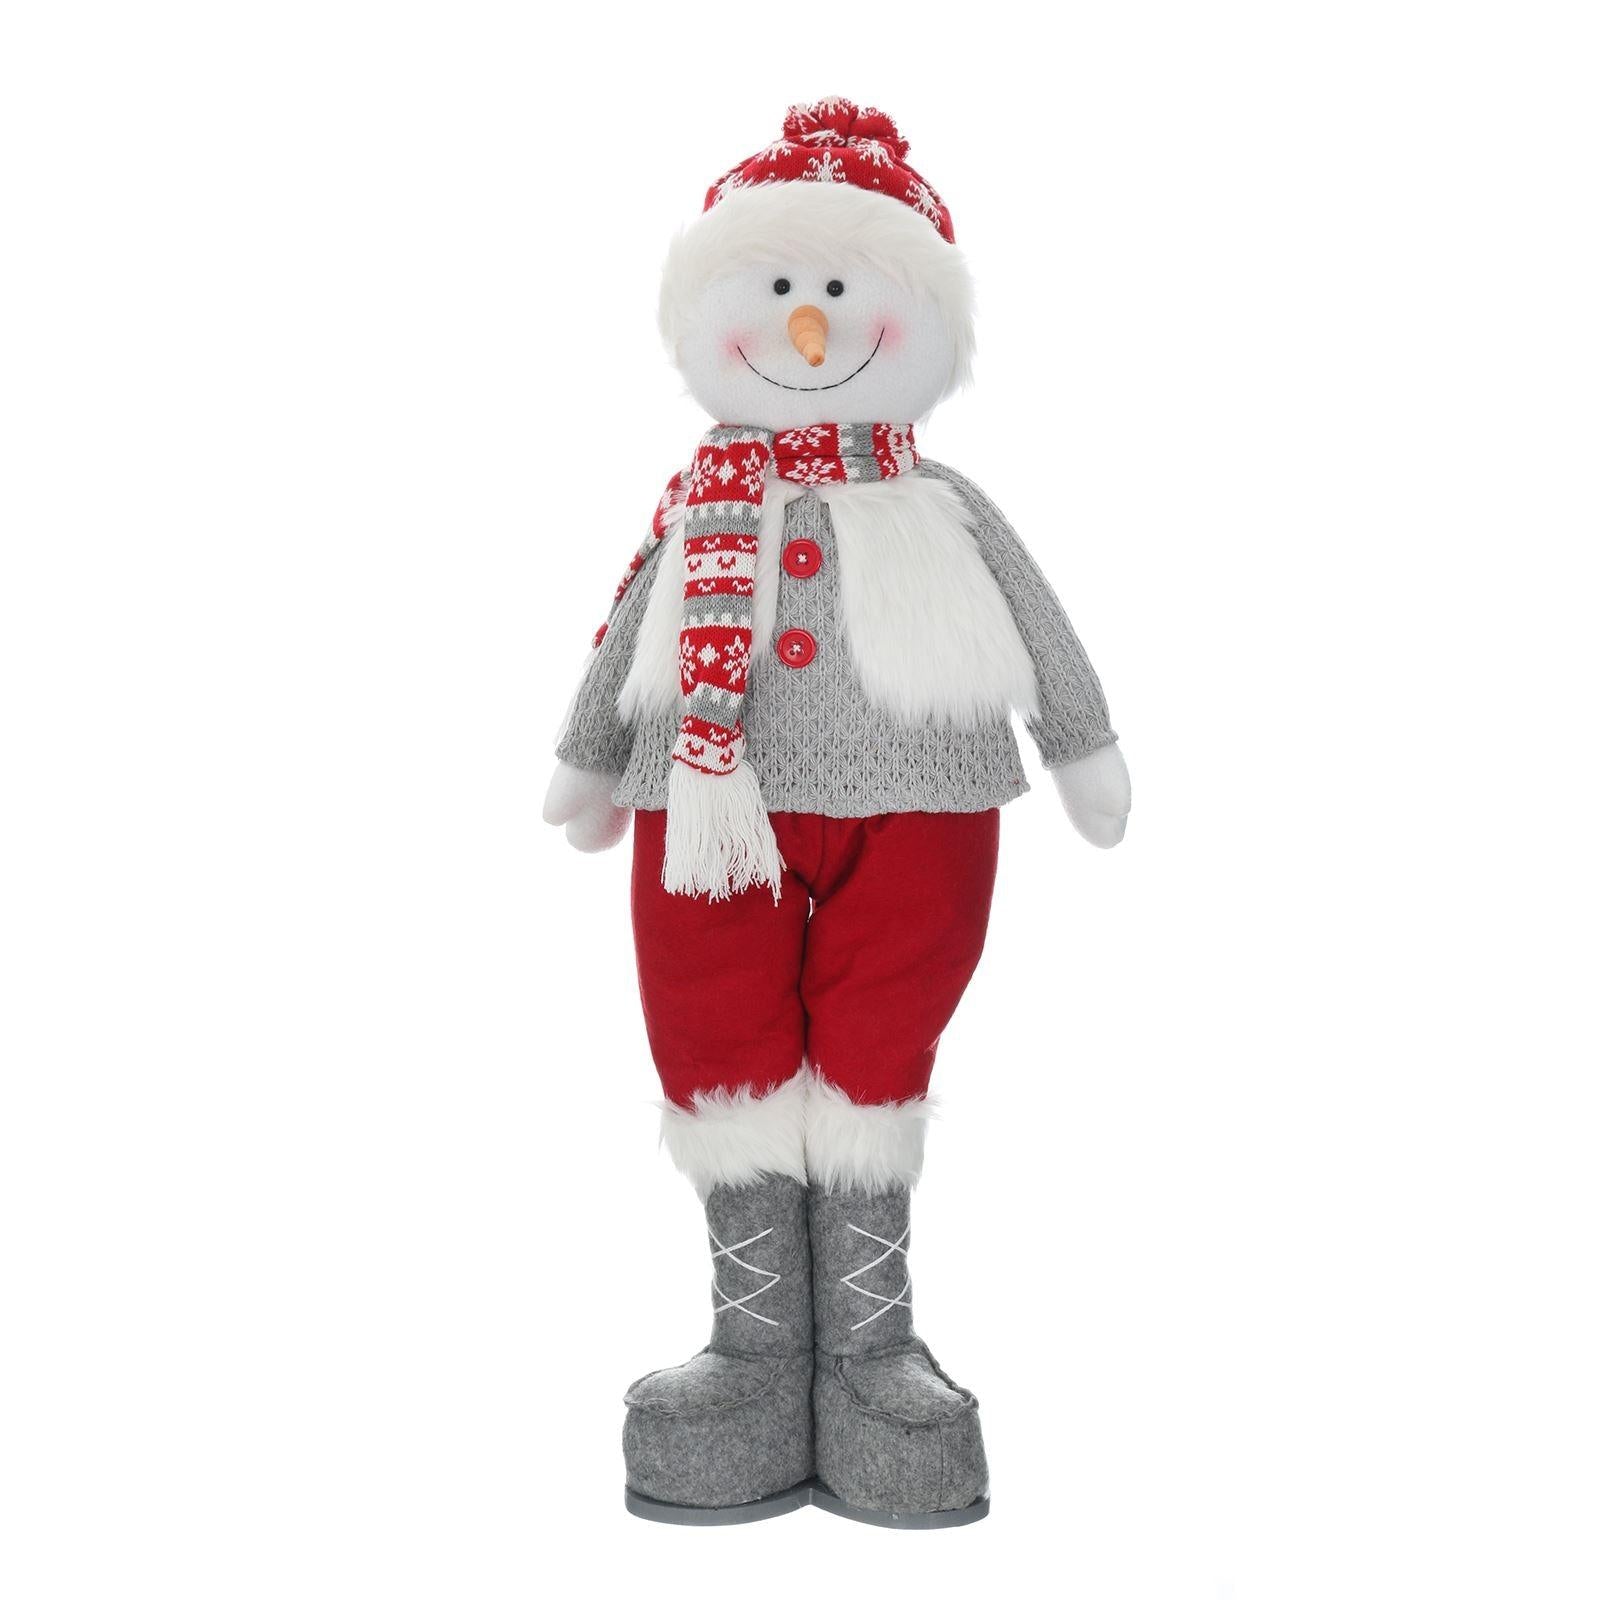 Mr Crimbo 26" Plush Christmas Figure Decoration Grey White - MrCrimbo.co.uk -XS5733 - Snowman -christmas